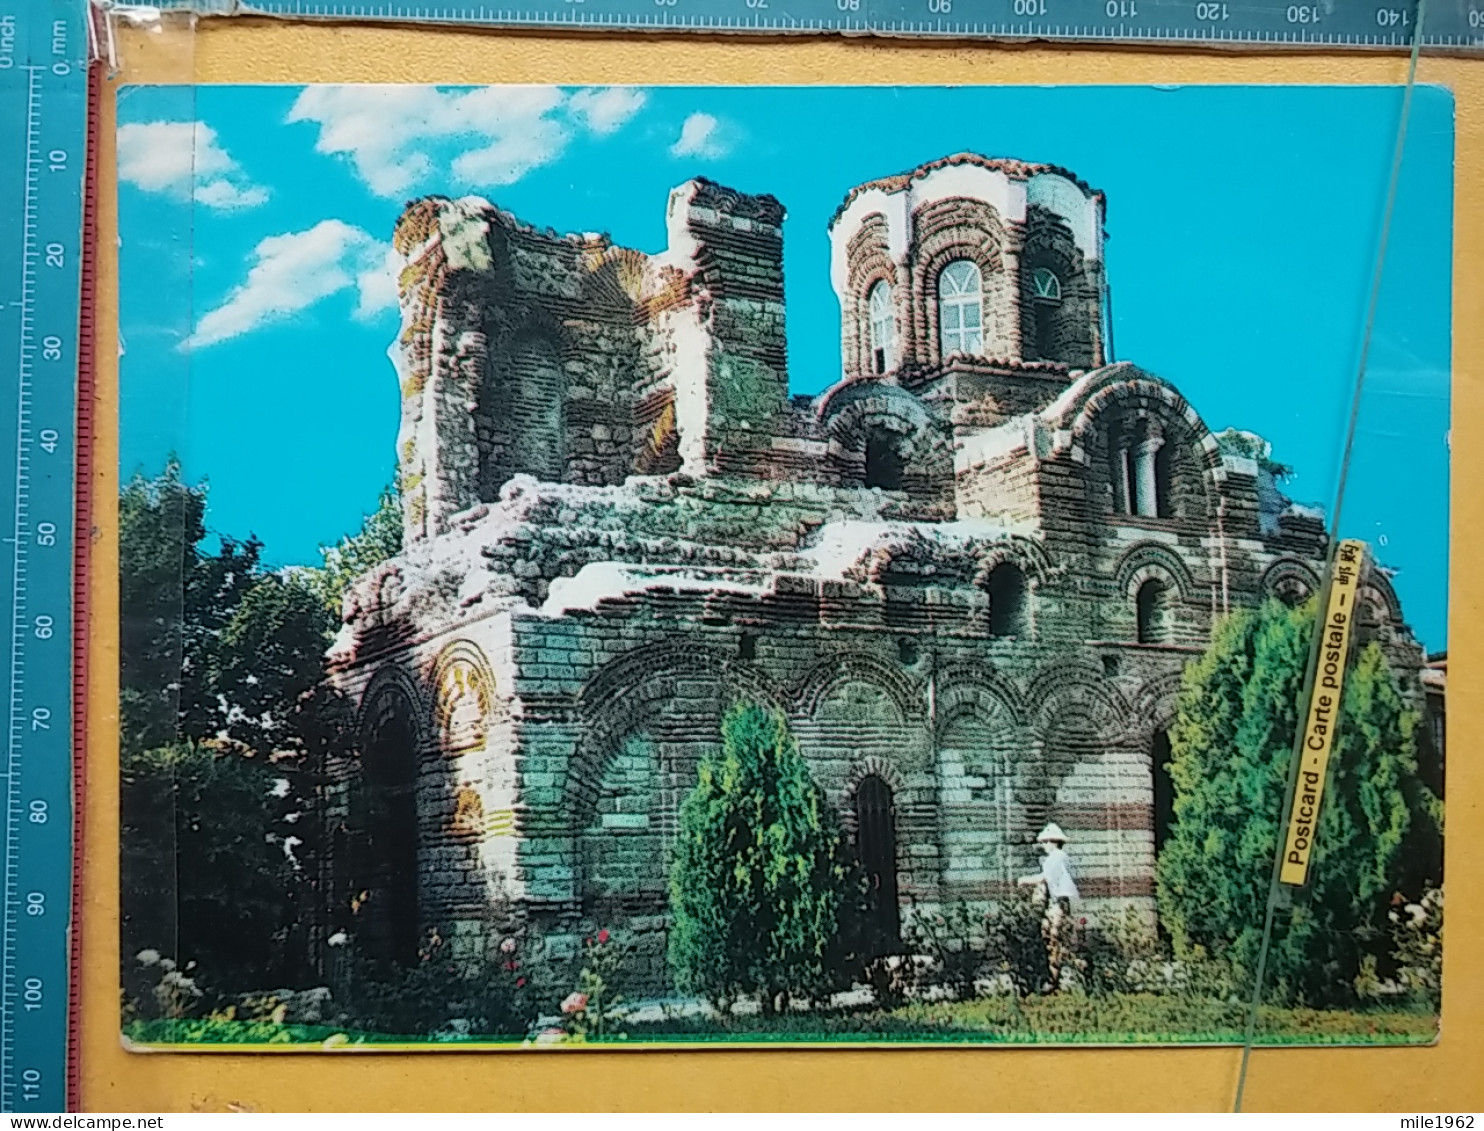 Kov 407-9 - BULGARIA, NESEBR, NESSEBRE, CHURCH, EGLISE - Bulgaria